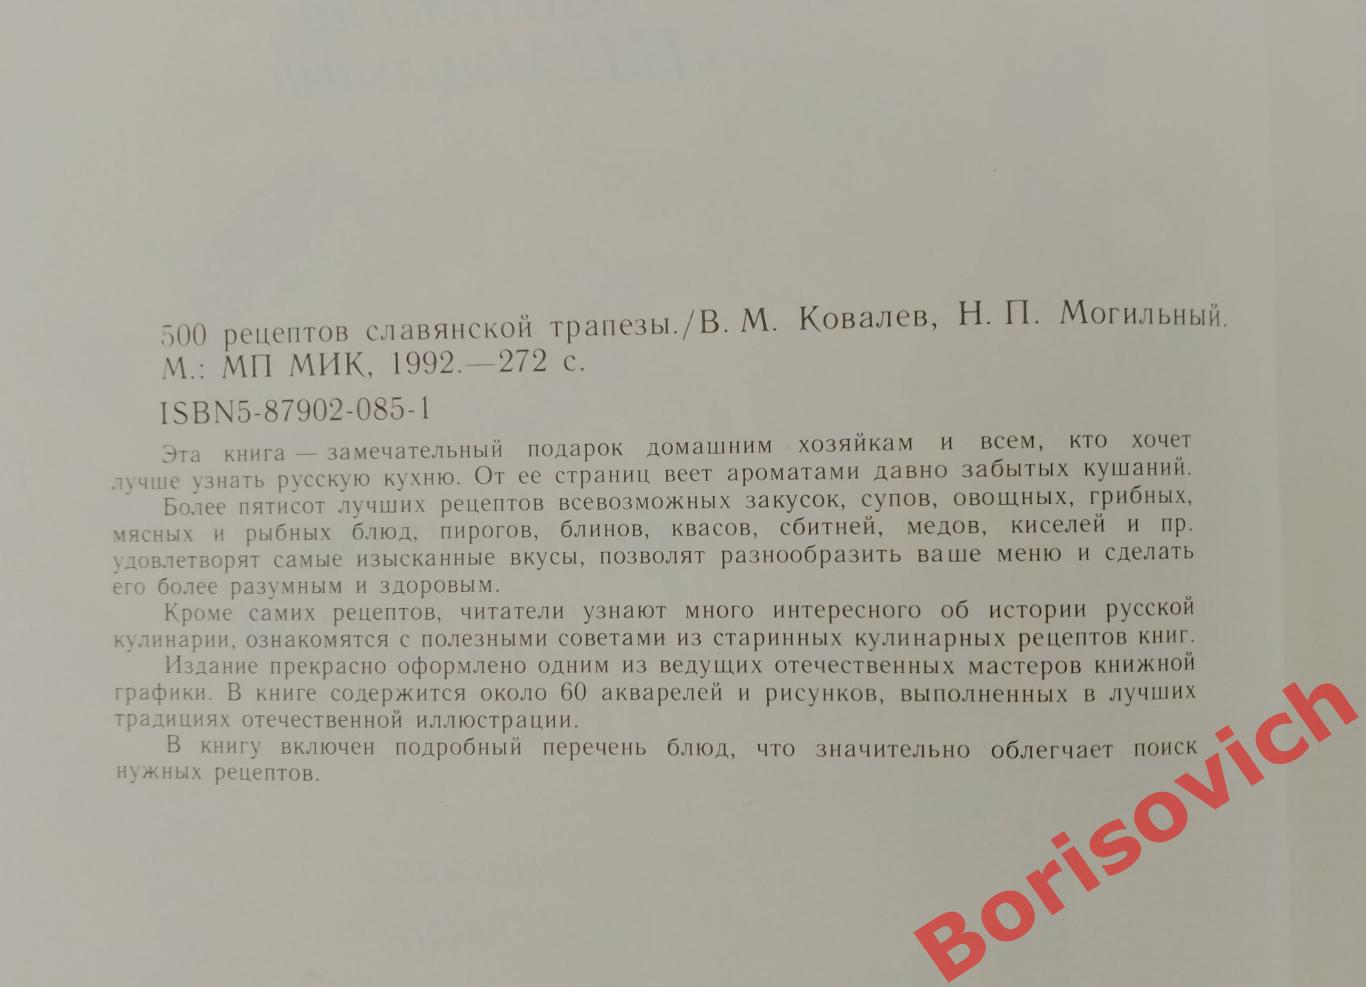 500 рецептов славянской трапезы 1993 г 272 стр 1